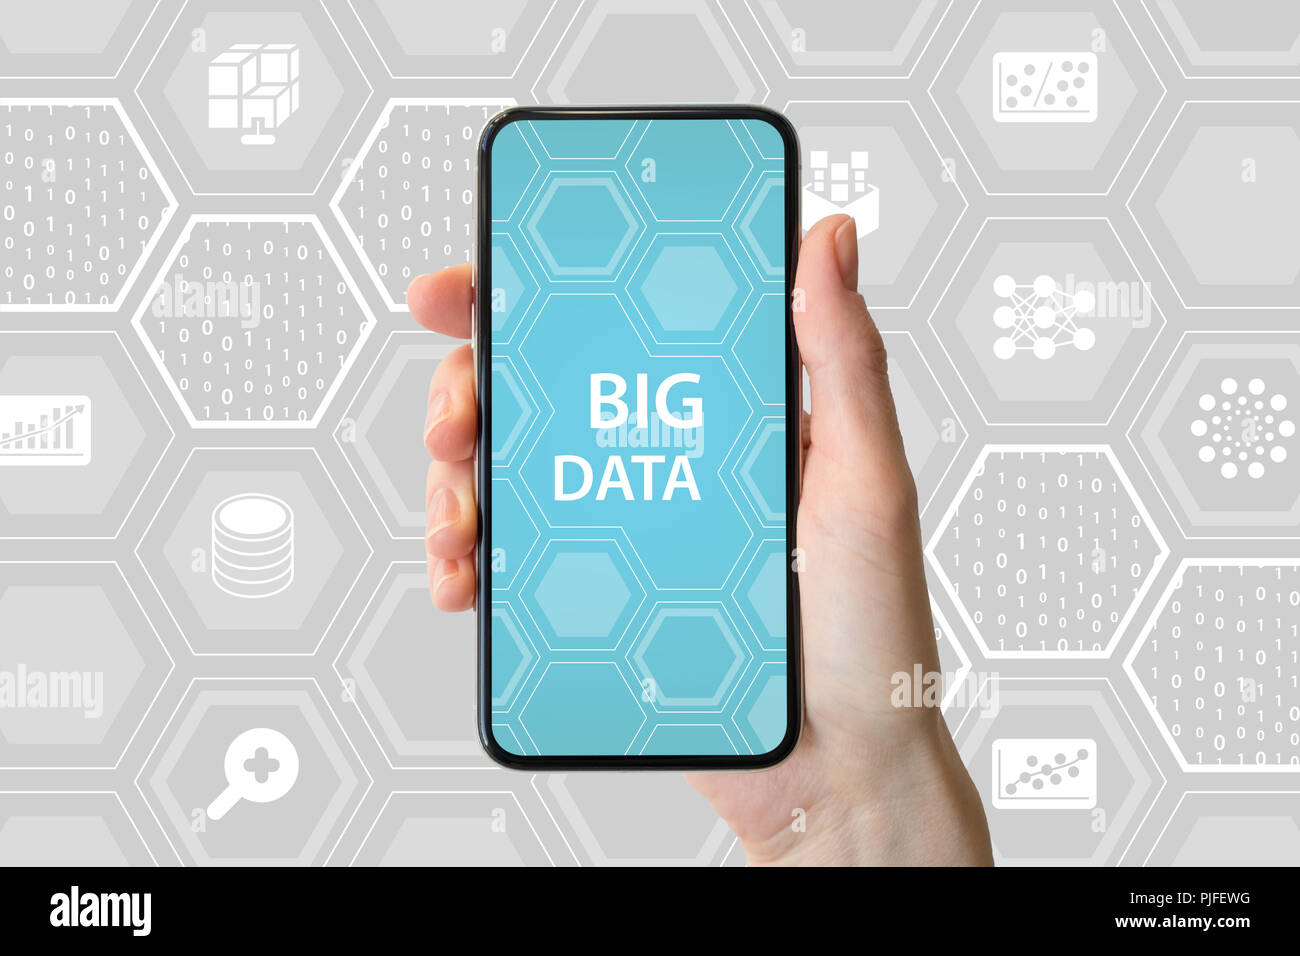 Concept de big data. Main tenant cadre moderne-smartphone libre en face de fond neutre avec des icônes Banque D'Images